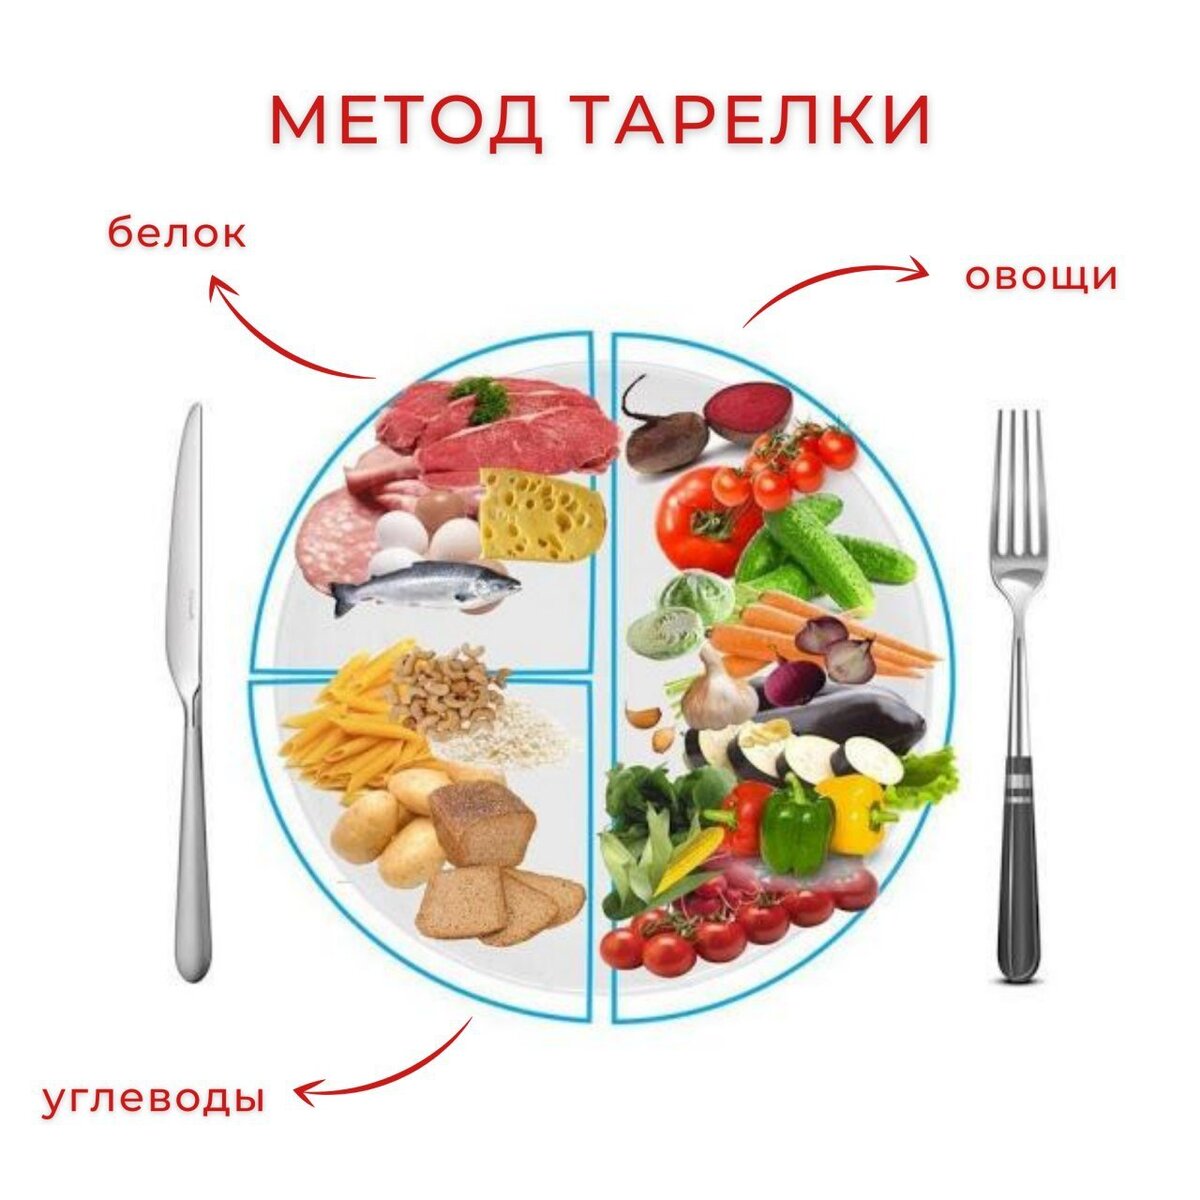 Метод тарелки для похудения